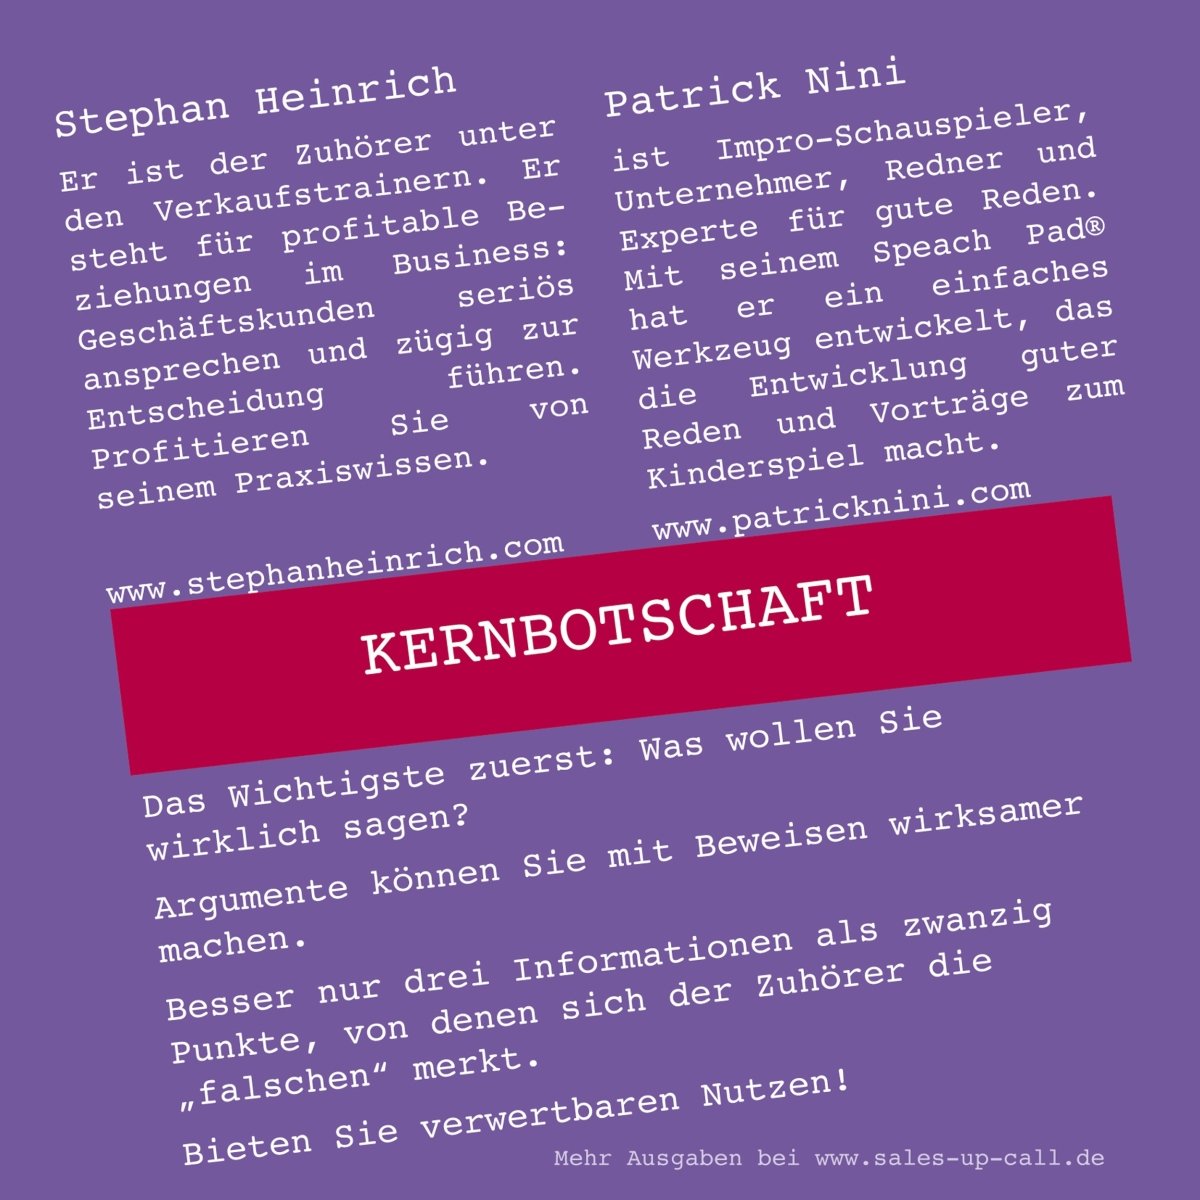 Kernbotschaft - Sales-up-Call - Stephan Heinrich